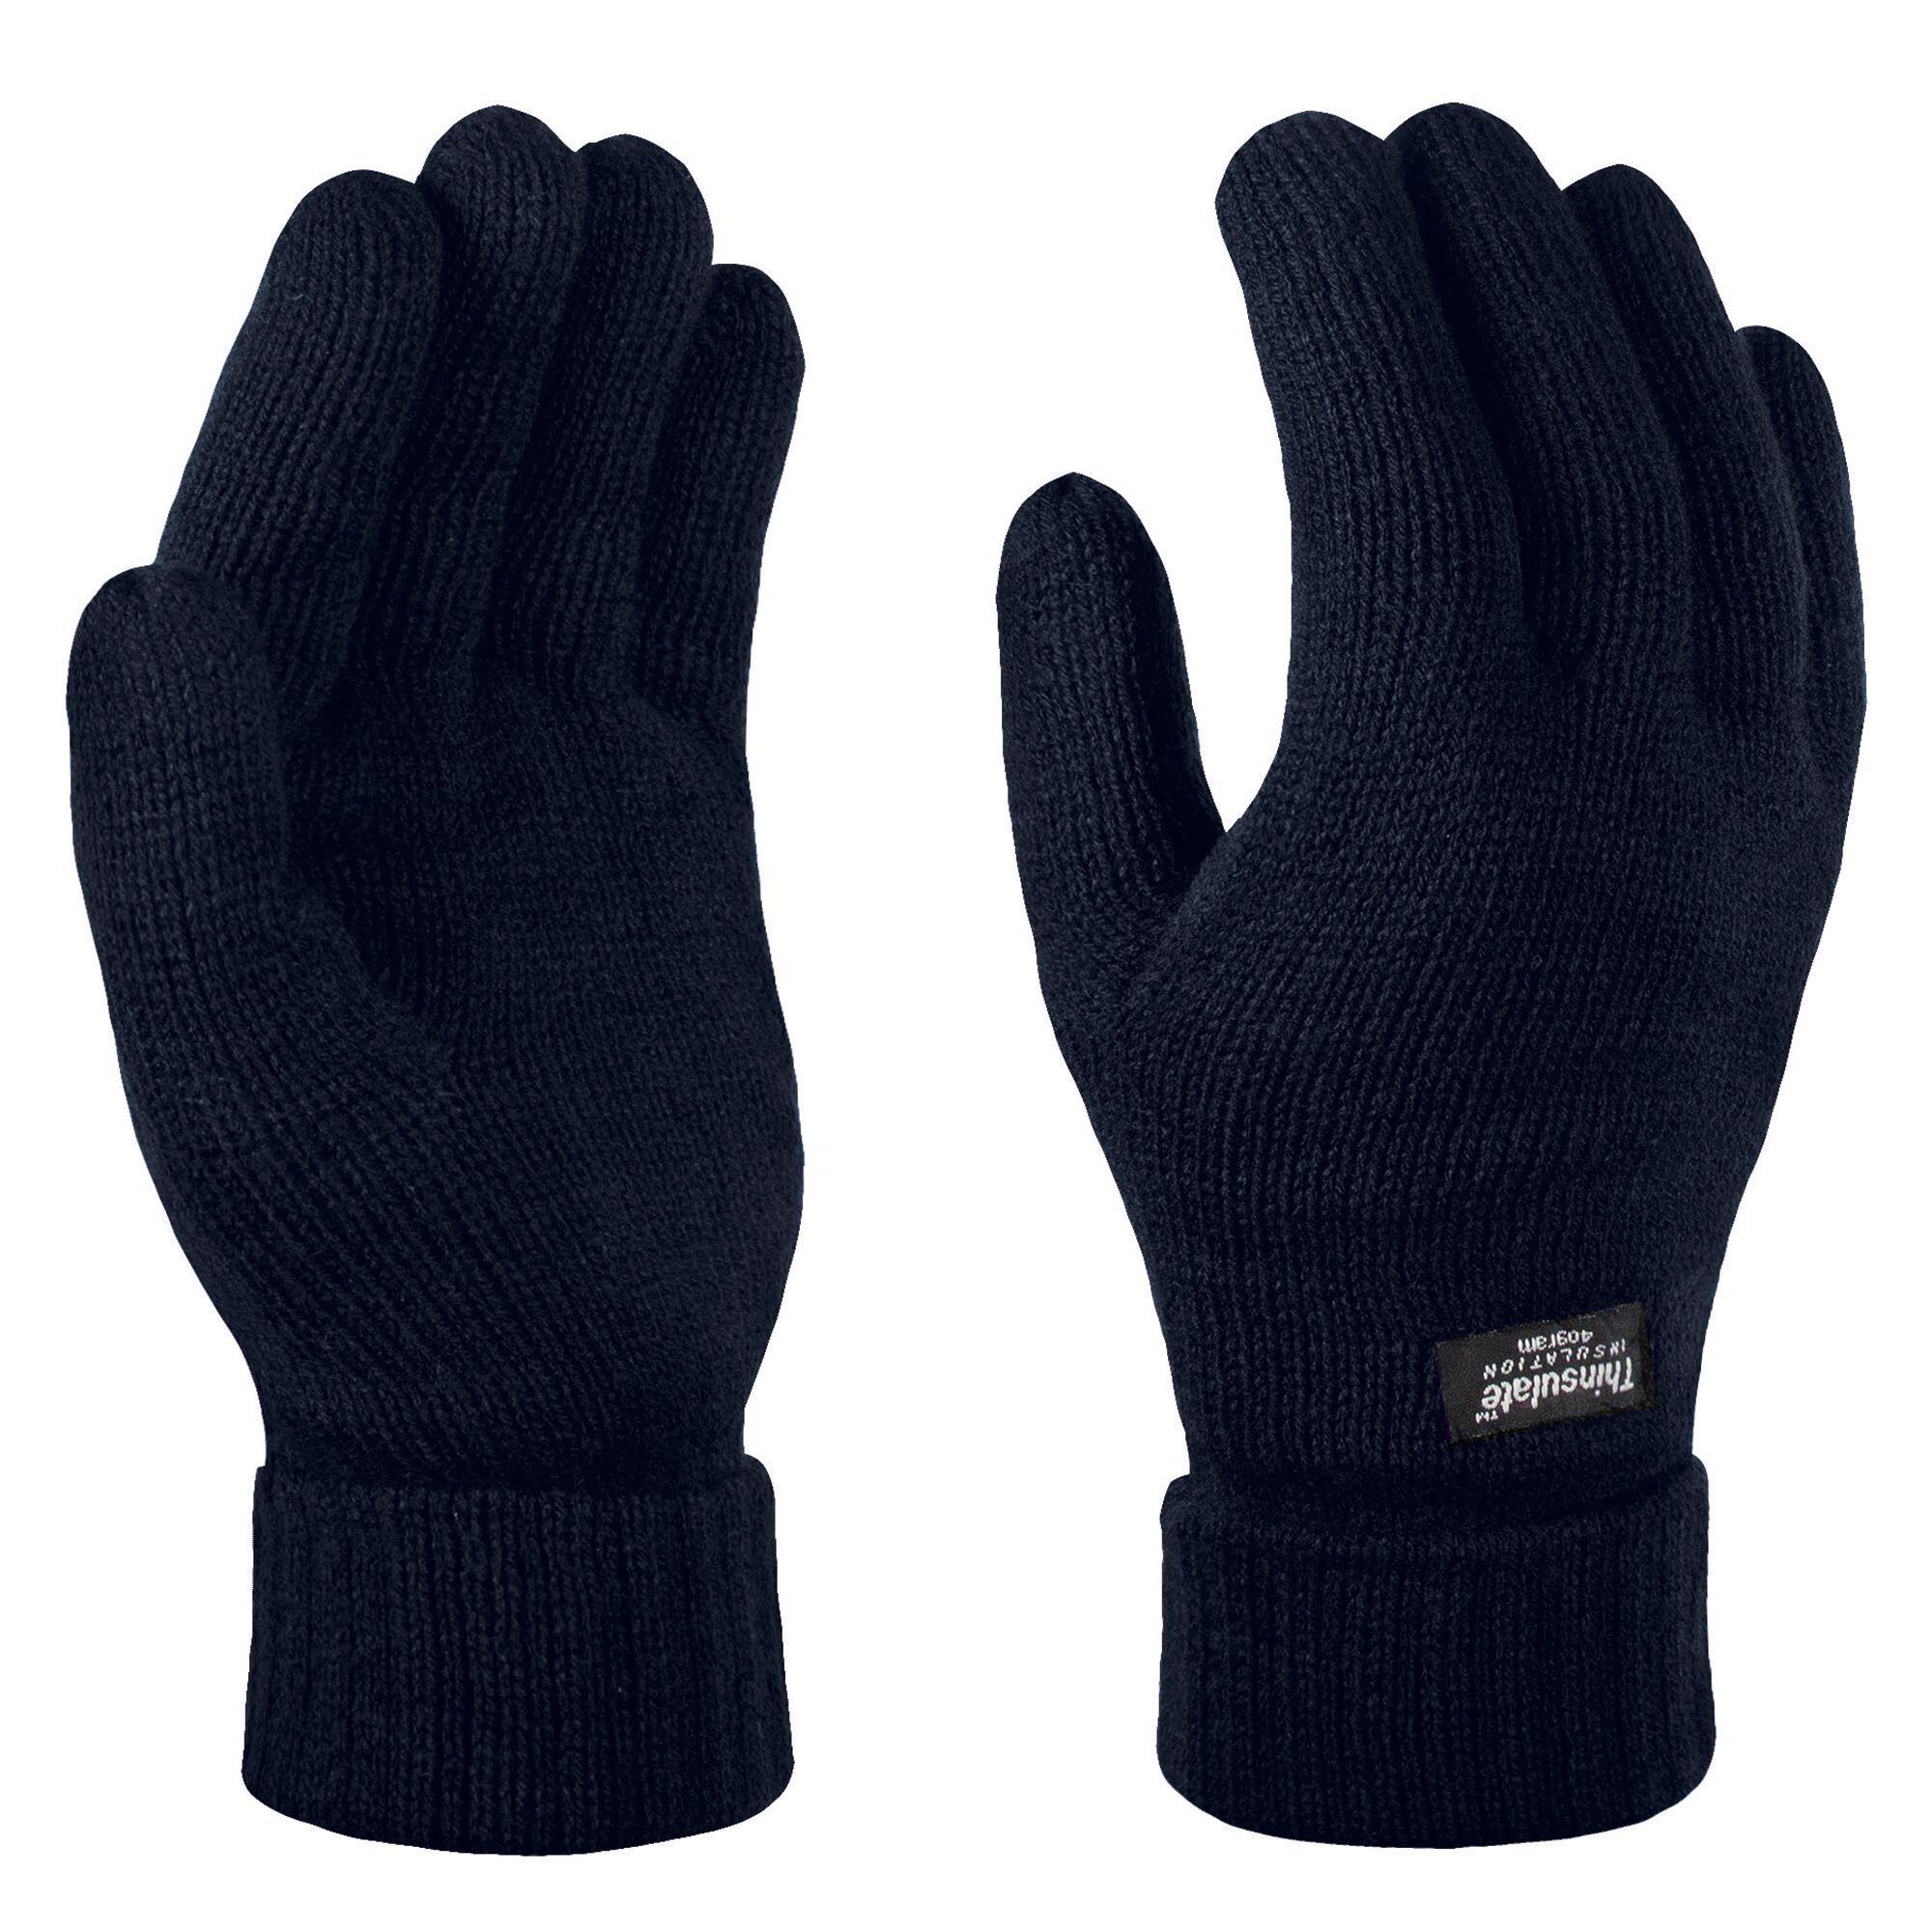 REGATTA Unisex Thinsulate Thermal Winter Gloves (Navy)